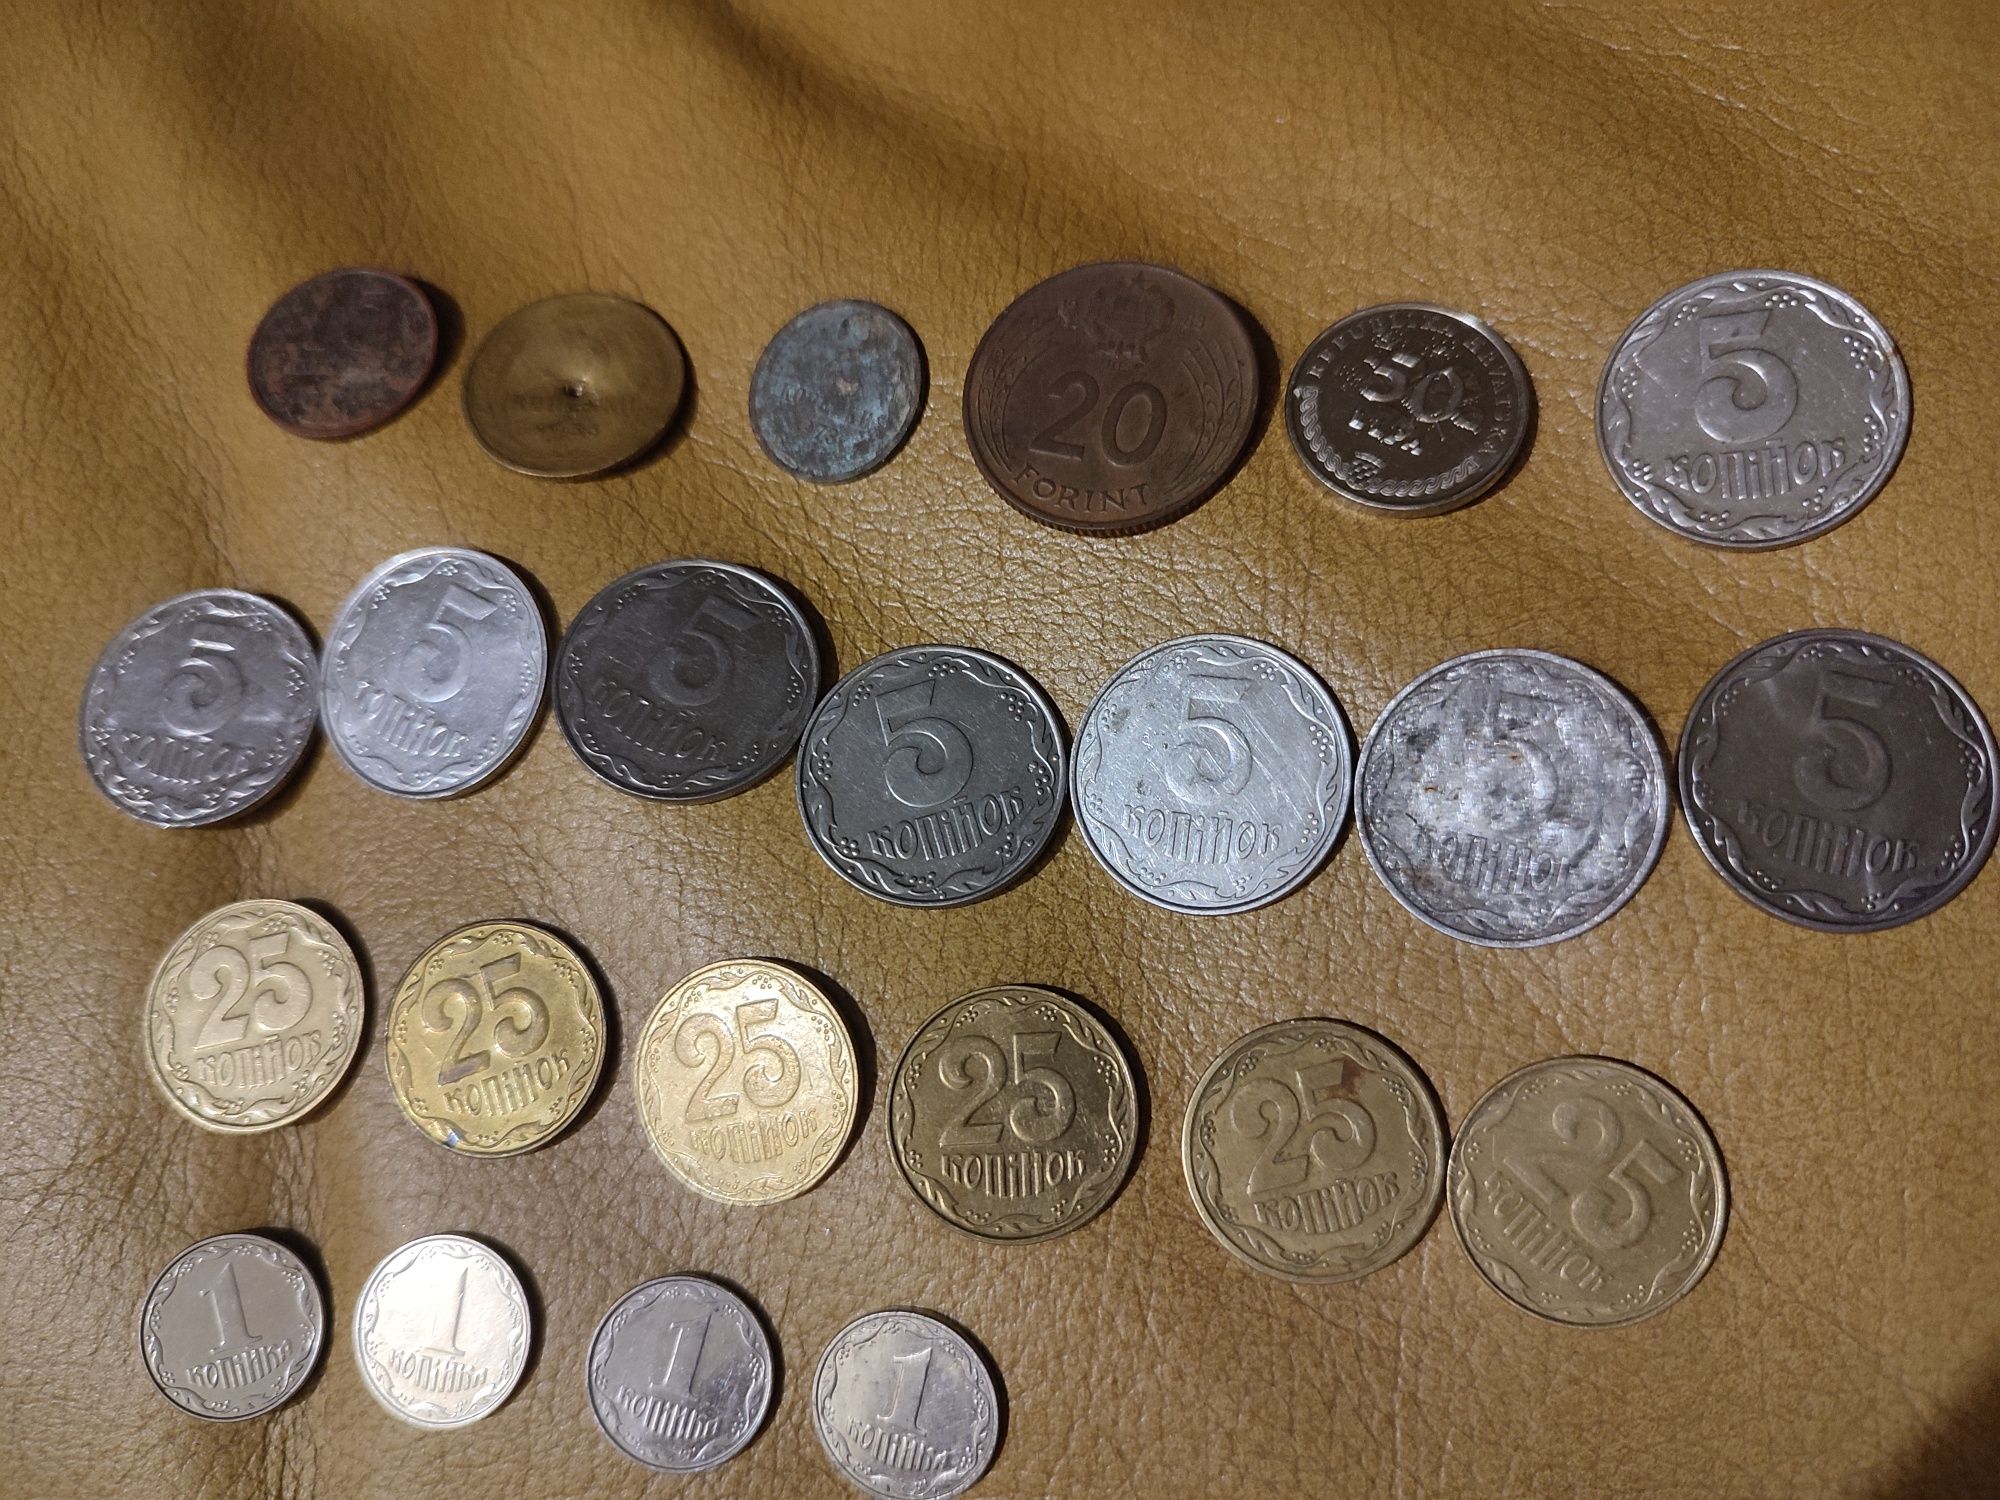 Монети ФРГ, Португалии, Малайзии.СССР, Украина,Хорватия,Венгрии,Египет